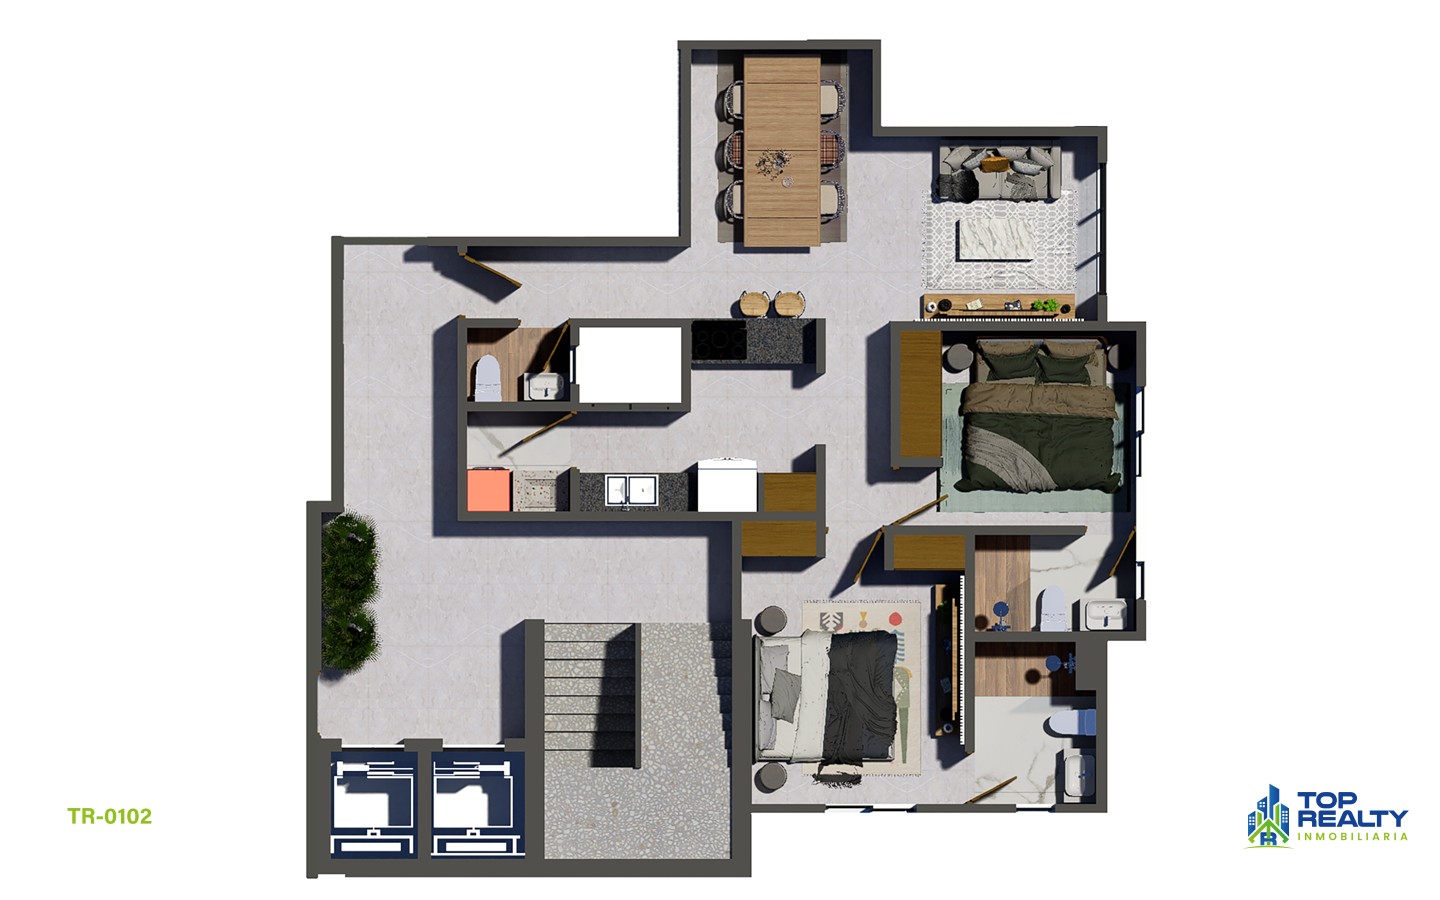 apartamentos - TR-0102-B Estilo y Comodidad: Residencias 2 Hab. con Amenidades Premium 6